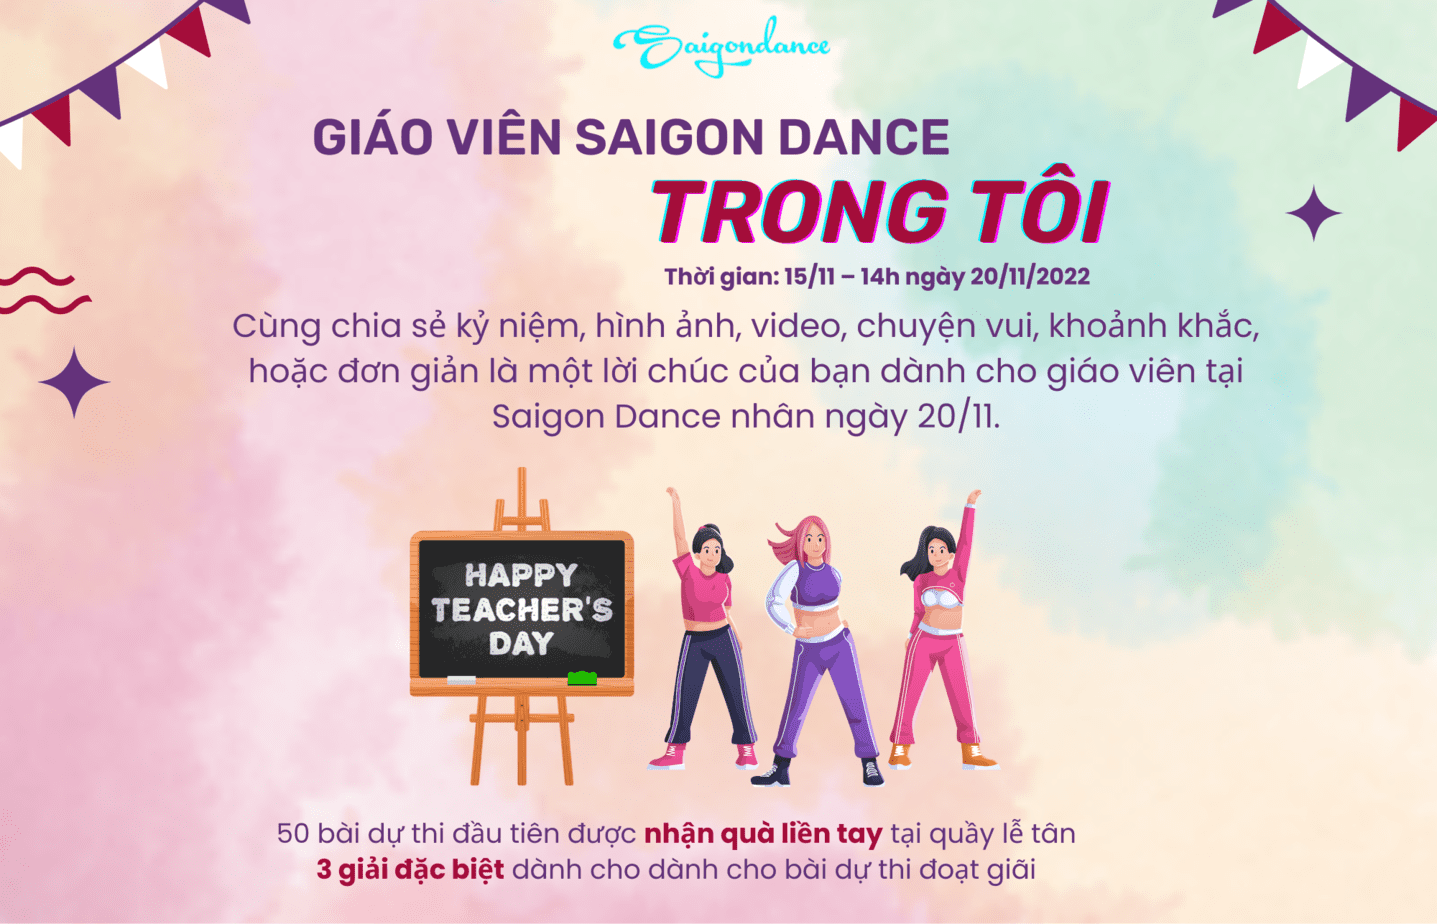 Nhận quà liền tay cùng Cuộc thi "Giáo viên Saigon Dance trong tôi" 20